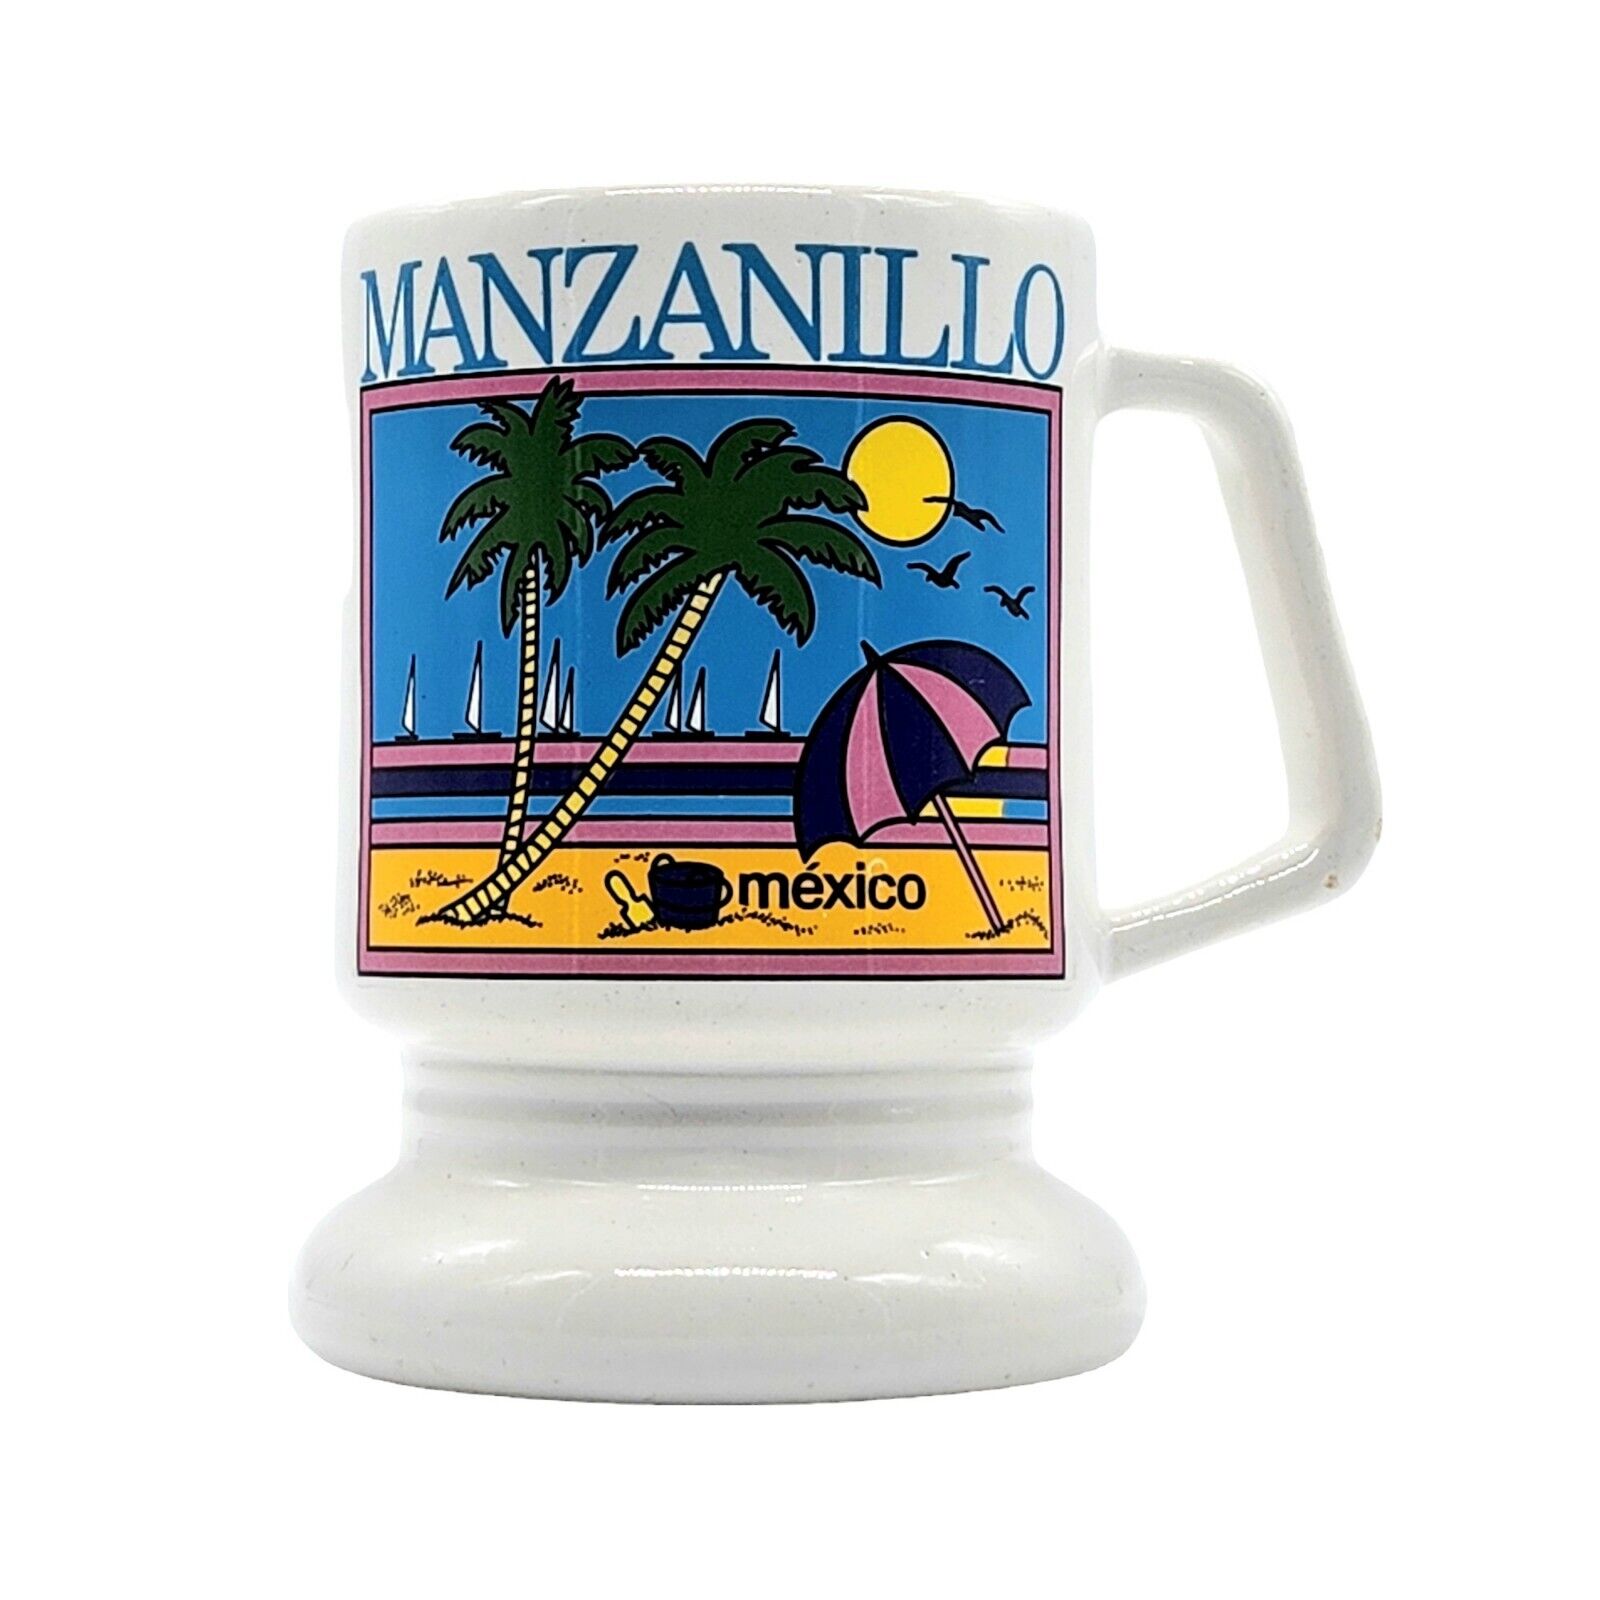 Vintage Souvenir Manzanillo Mexico Coffee Beverage Drink Pedestal Mug